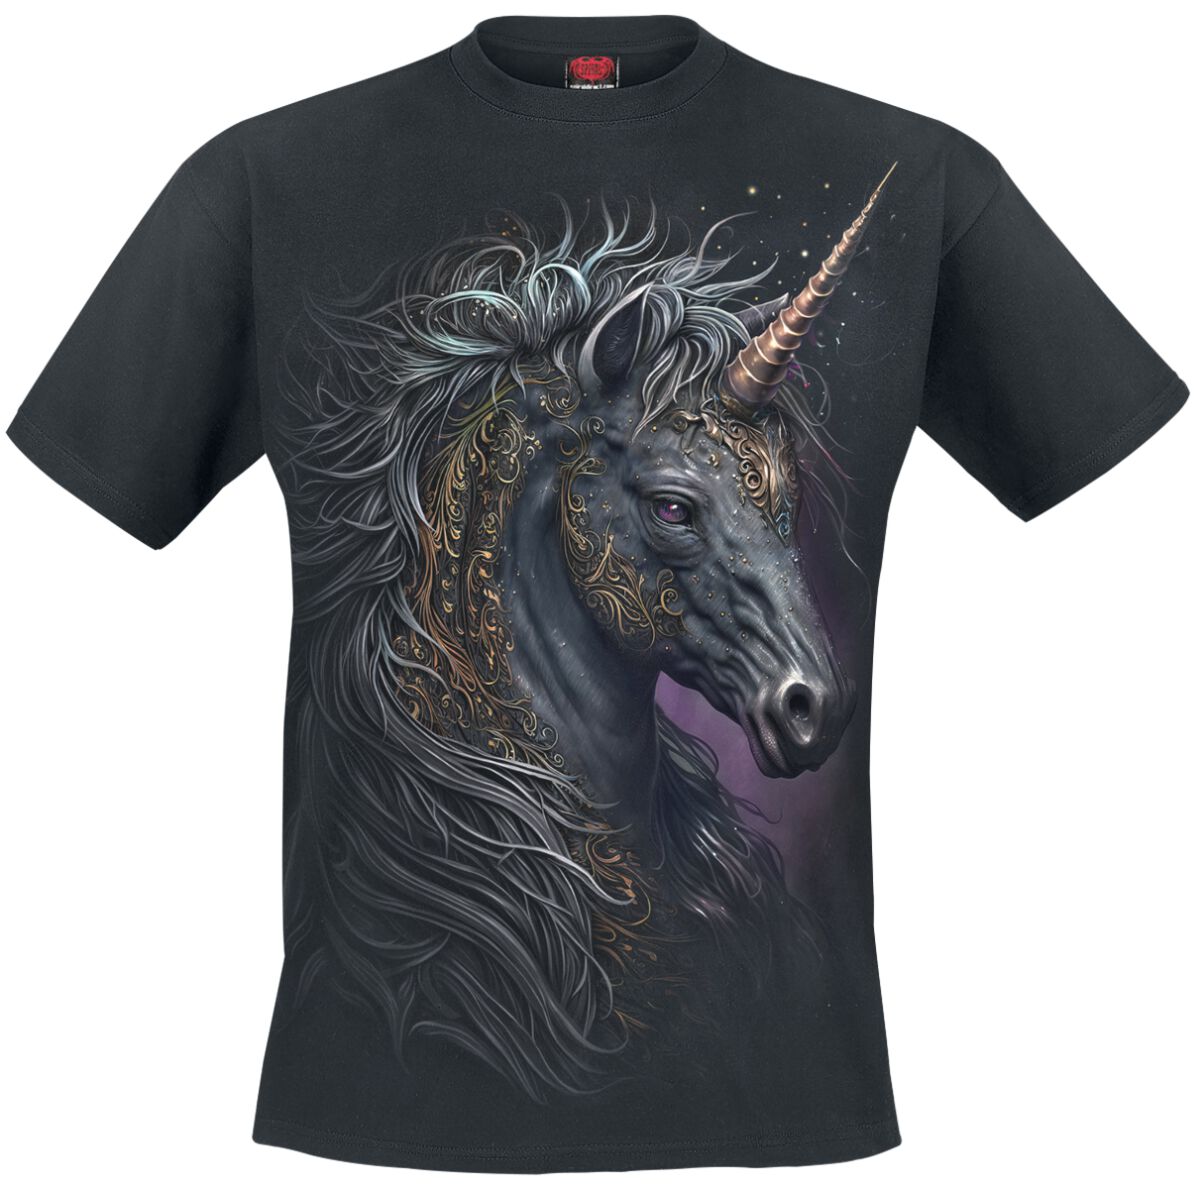 Spiral - Einhorn T-Shirt - Celtic Unicorn - S bis 3XL - für Männer - Größe M - schwarz